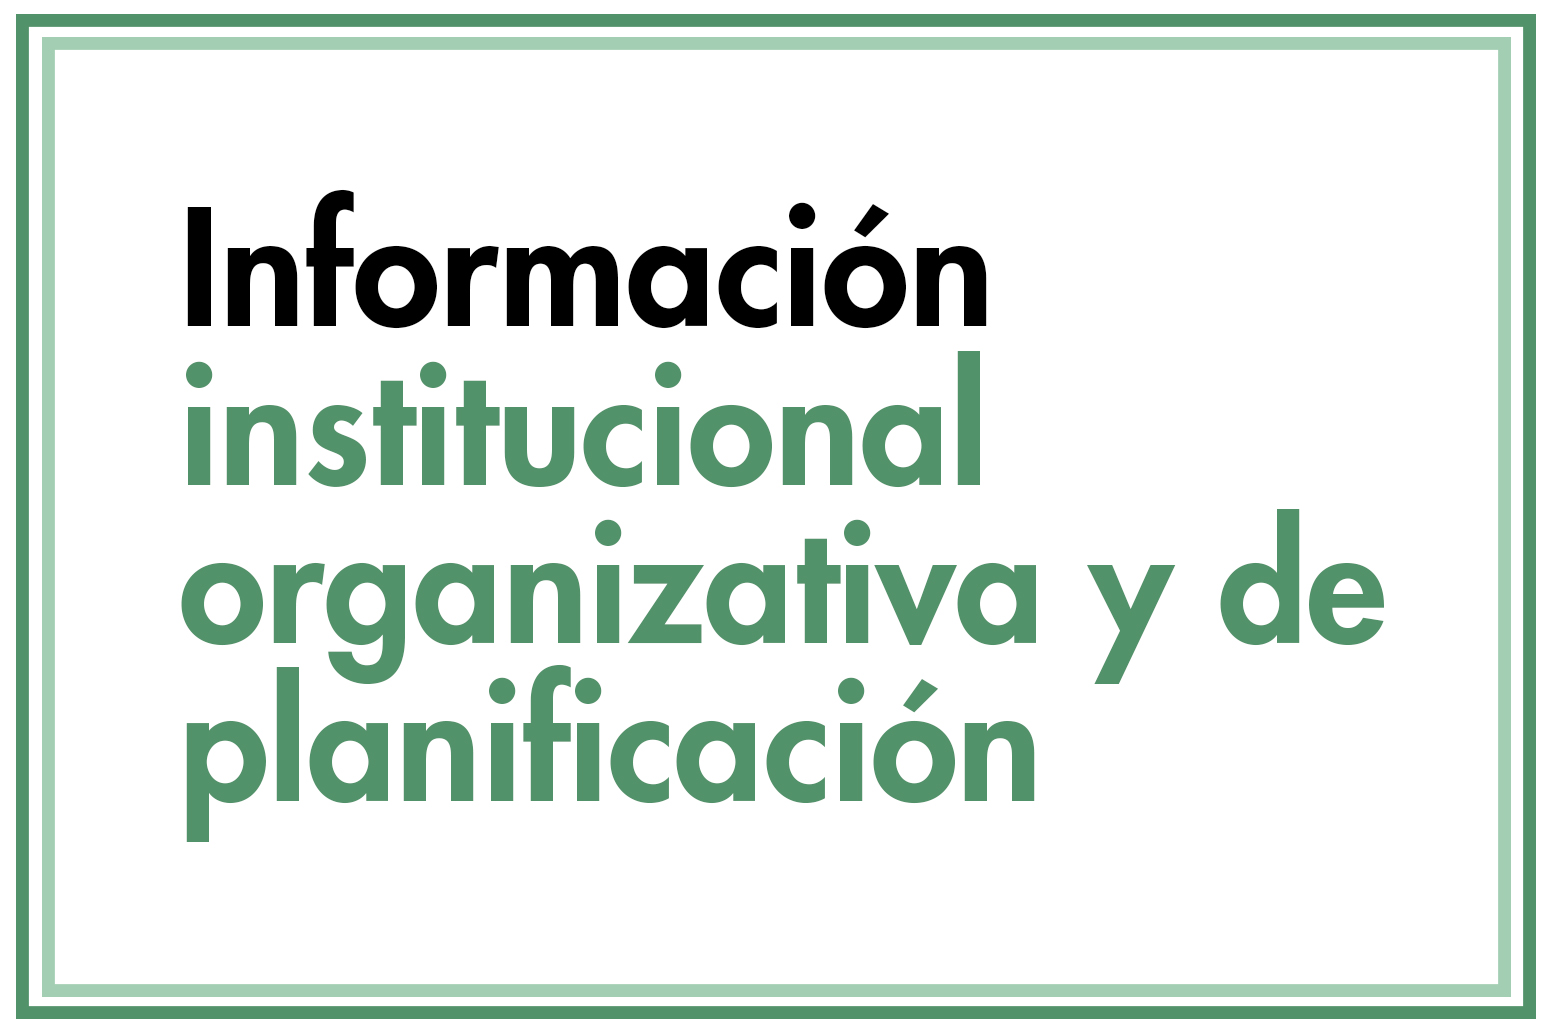 Acceso a Información institucional organizativa y de planificación